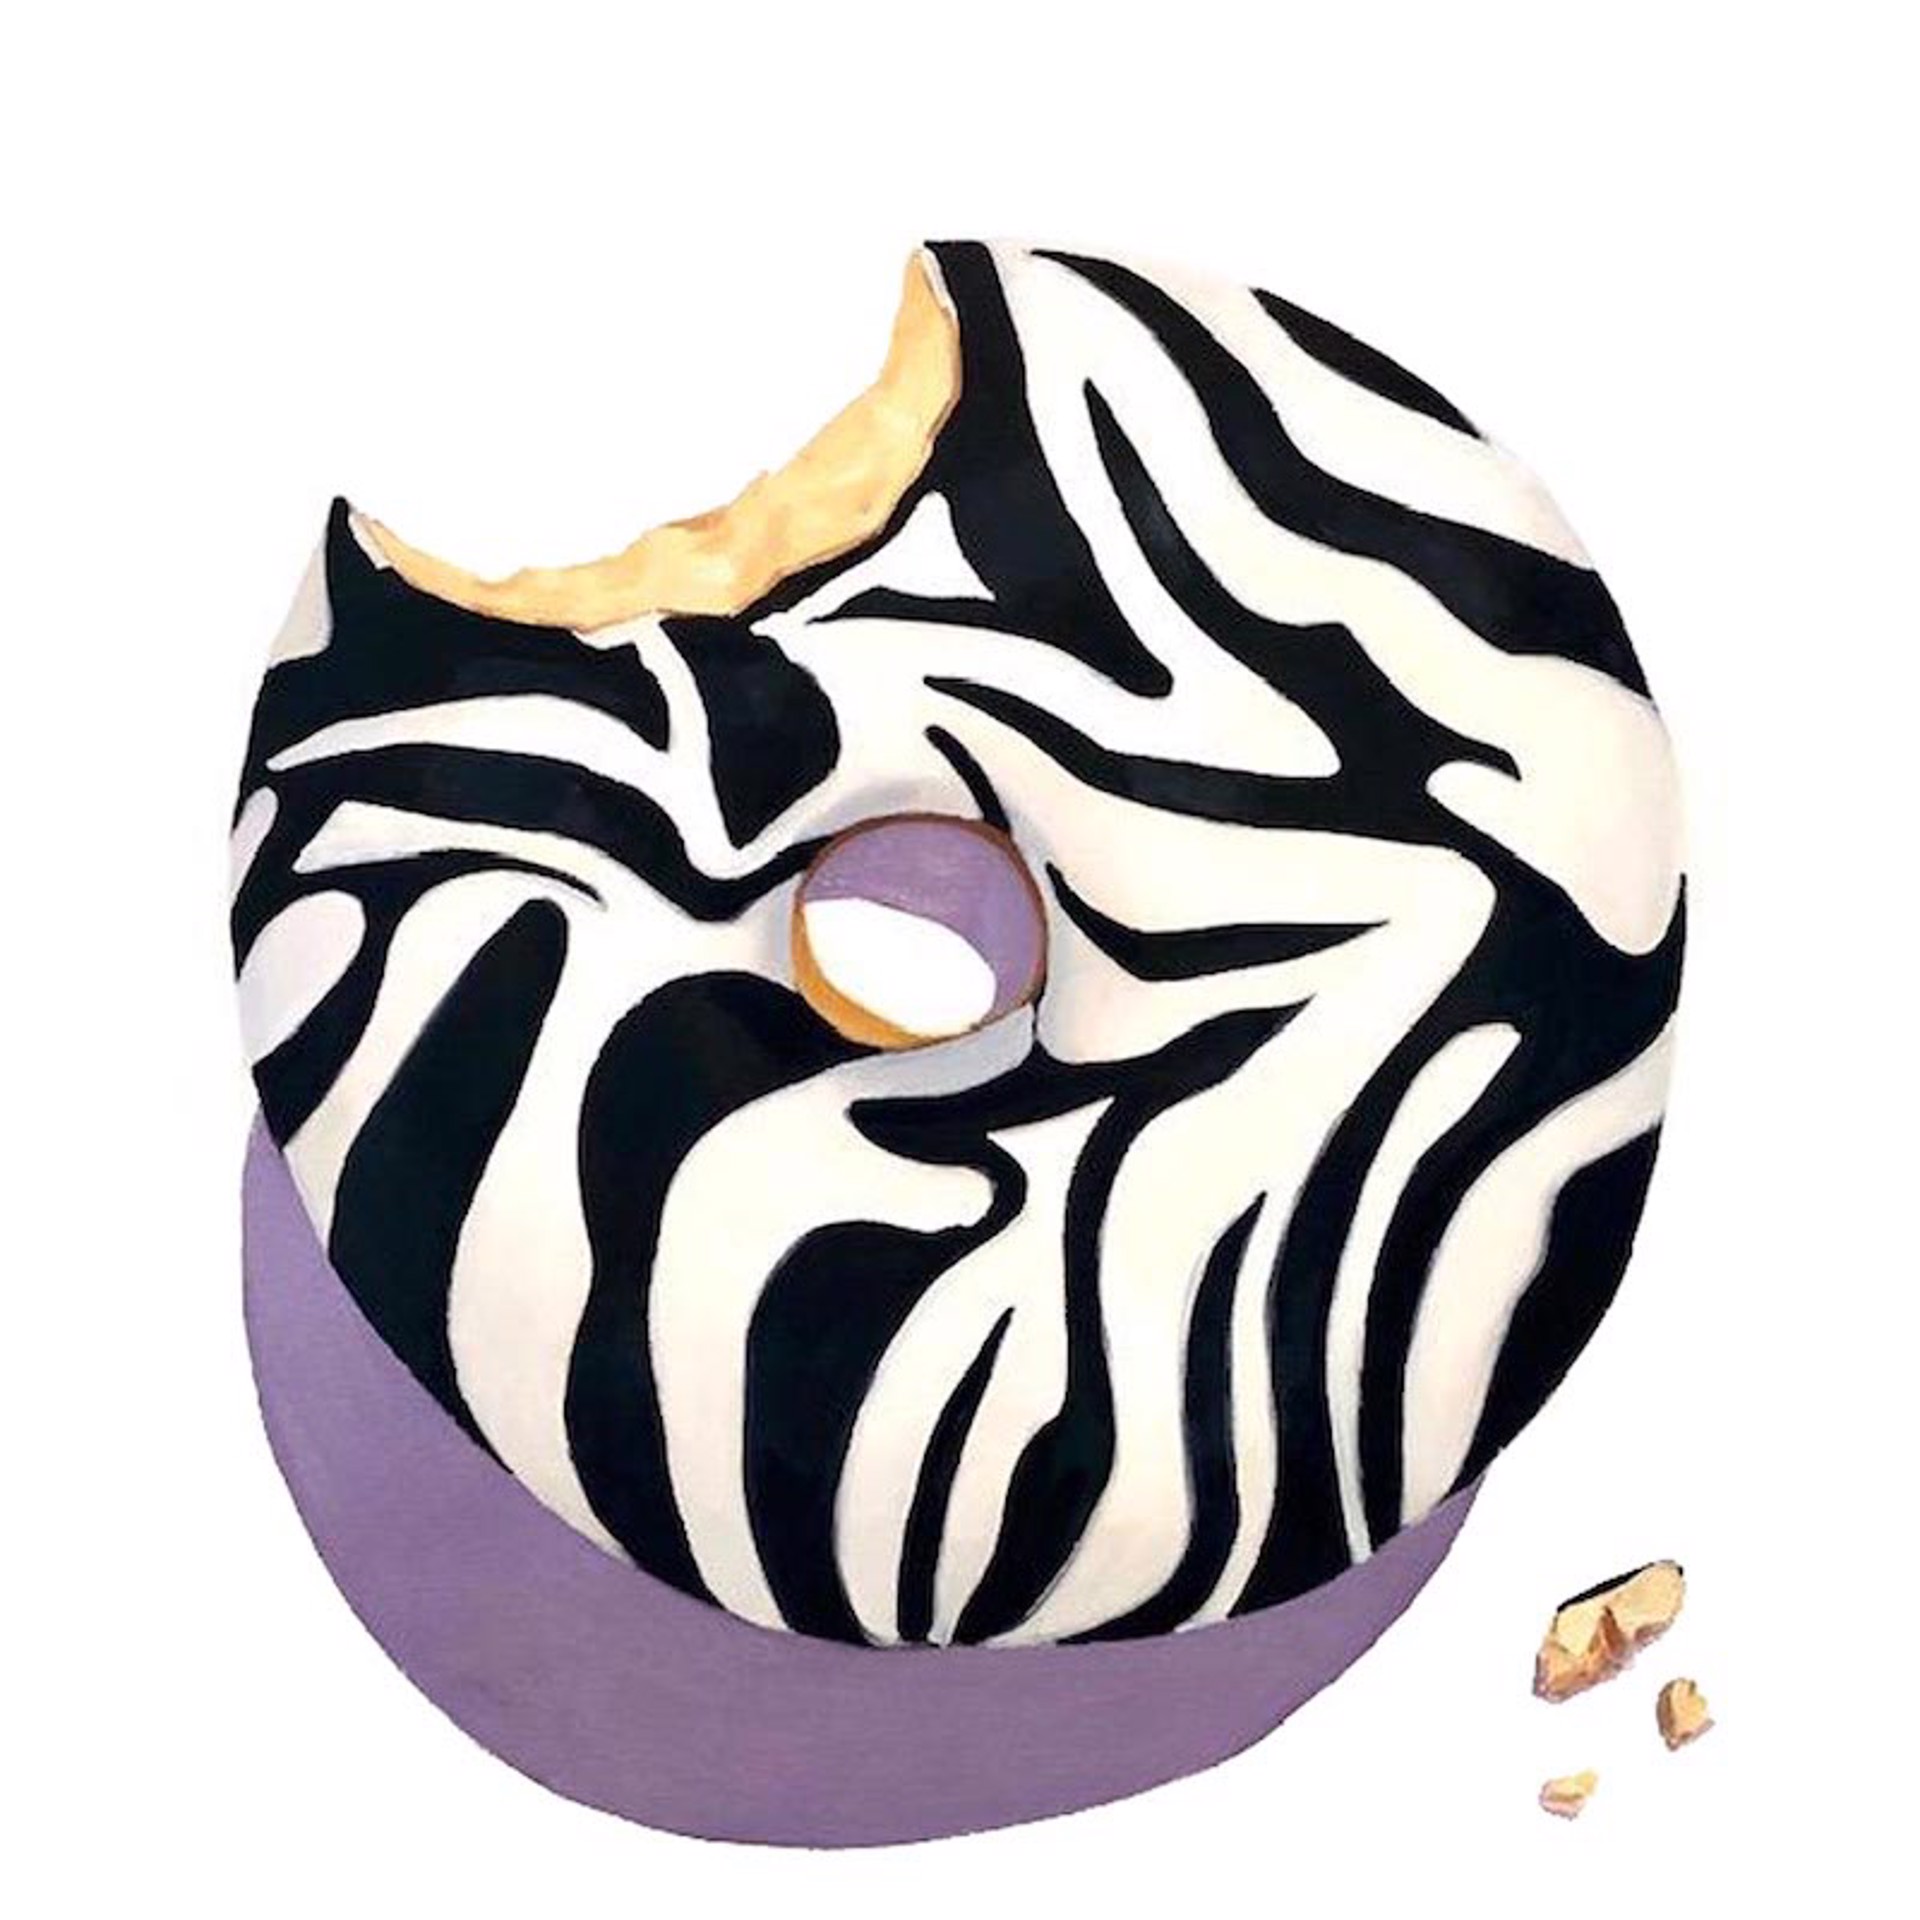 Zebra Print Donut by Terry Romero Paul